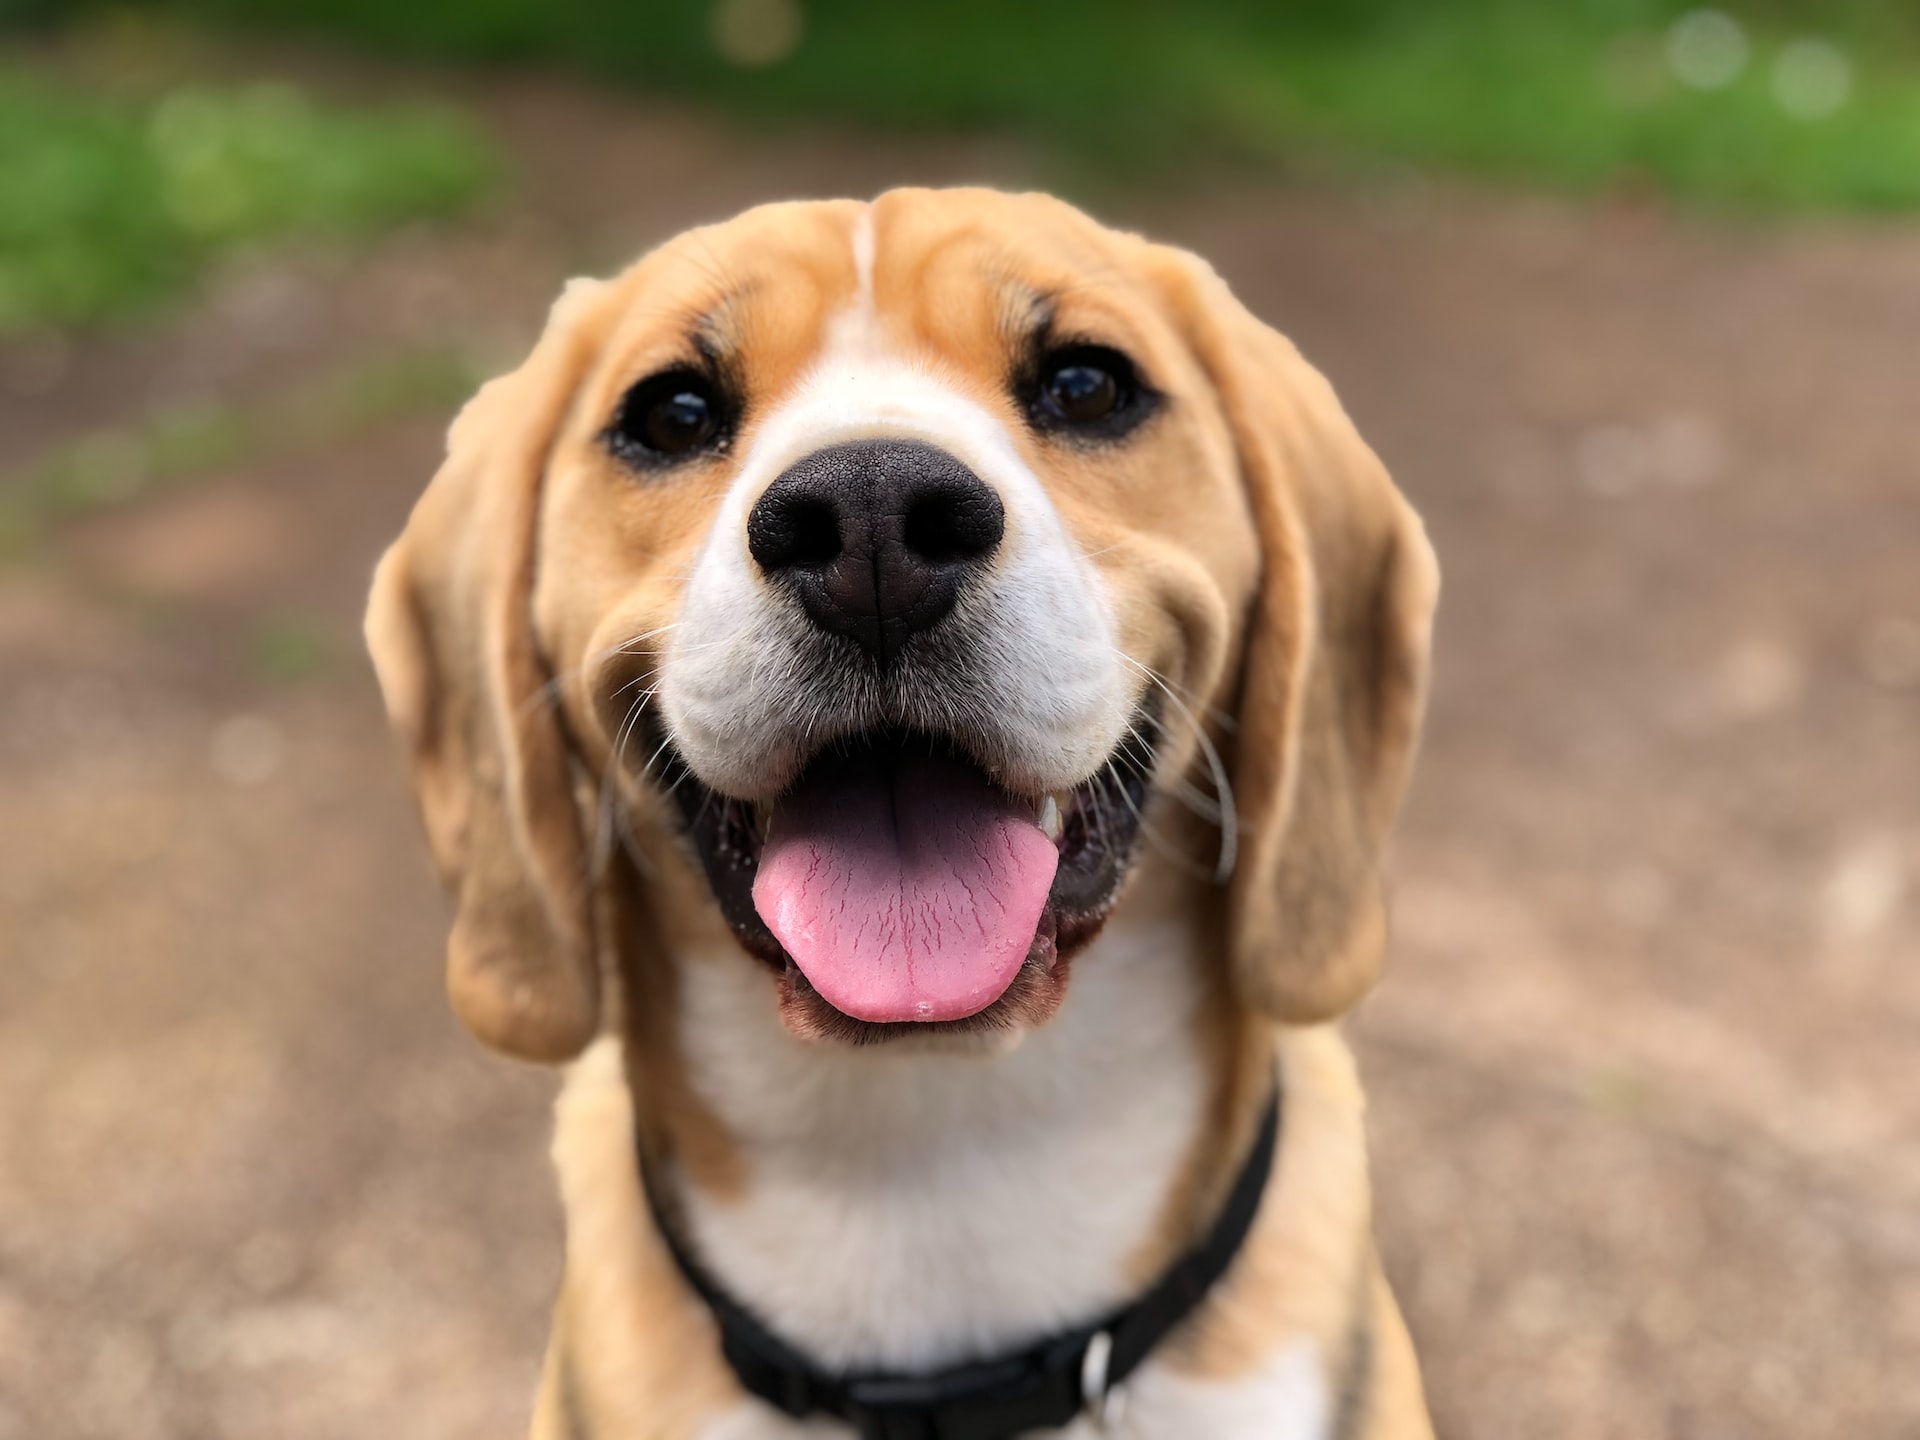 Dog smiling at camera